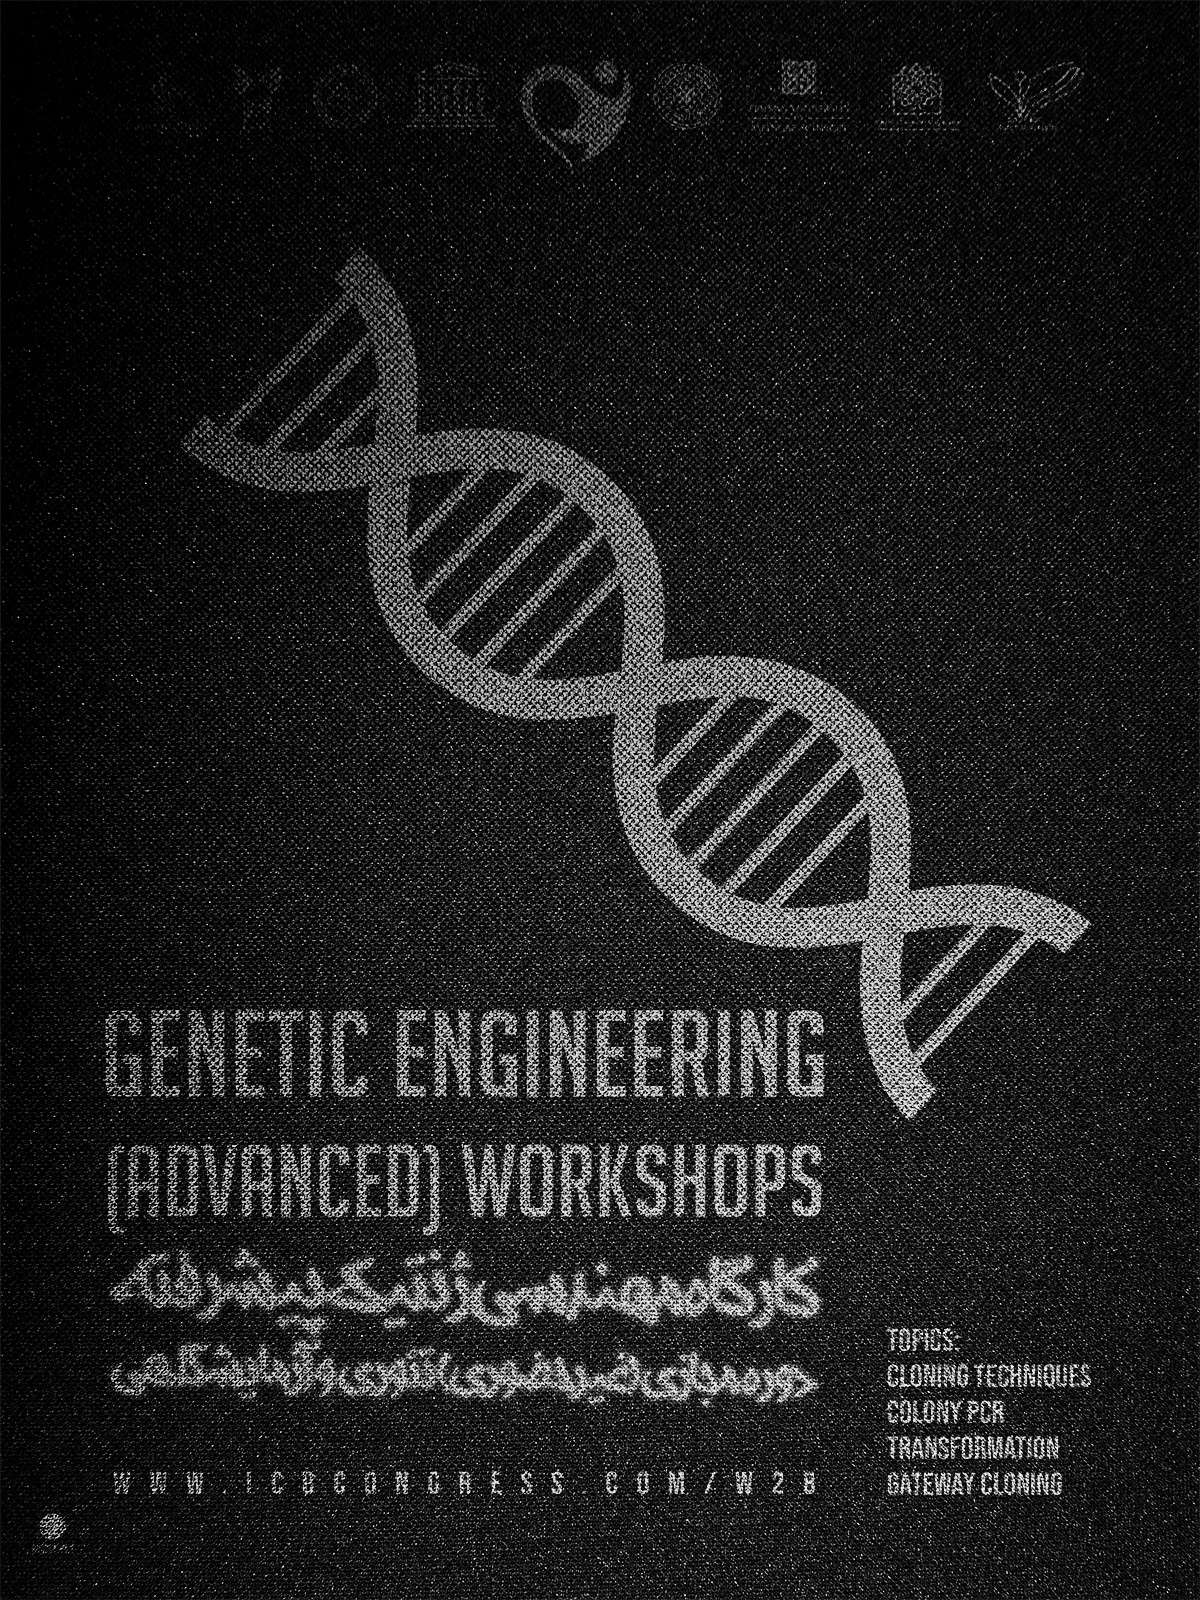 Genetic Engineering (Advanced) Workshops